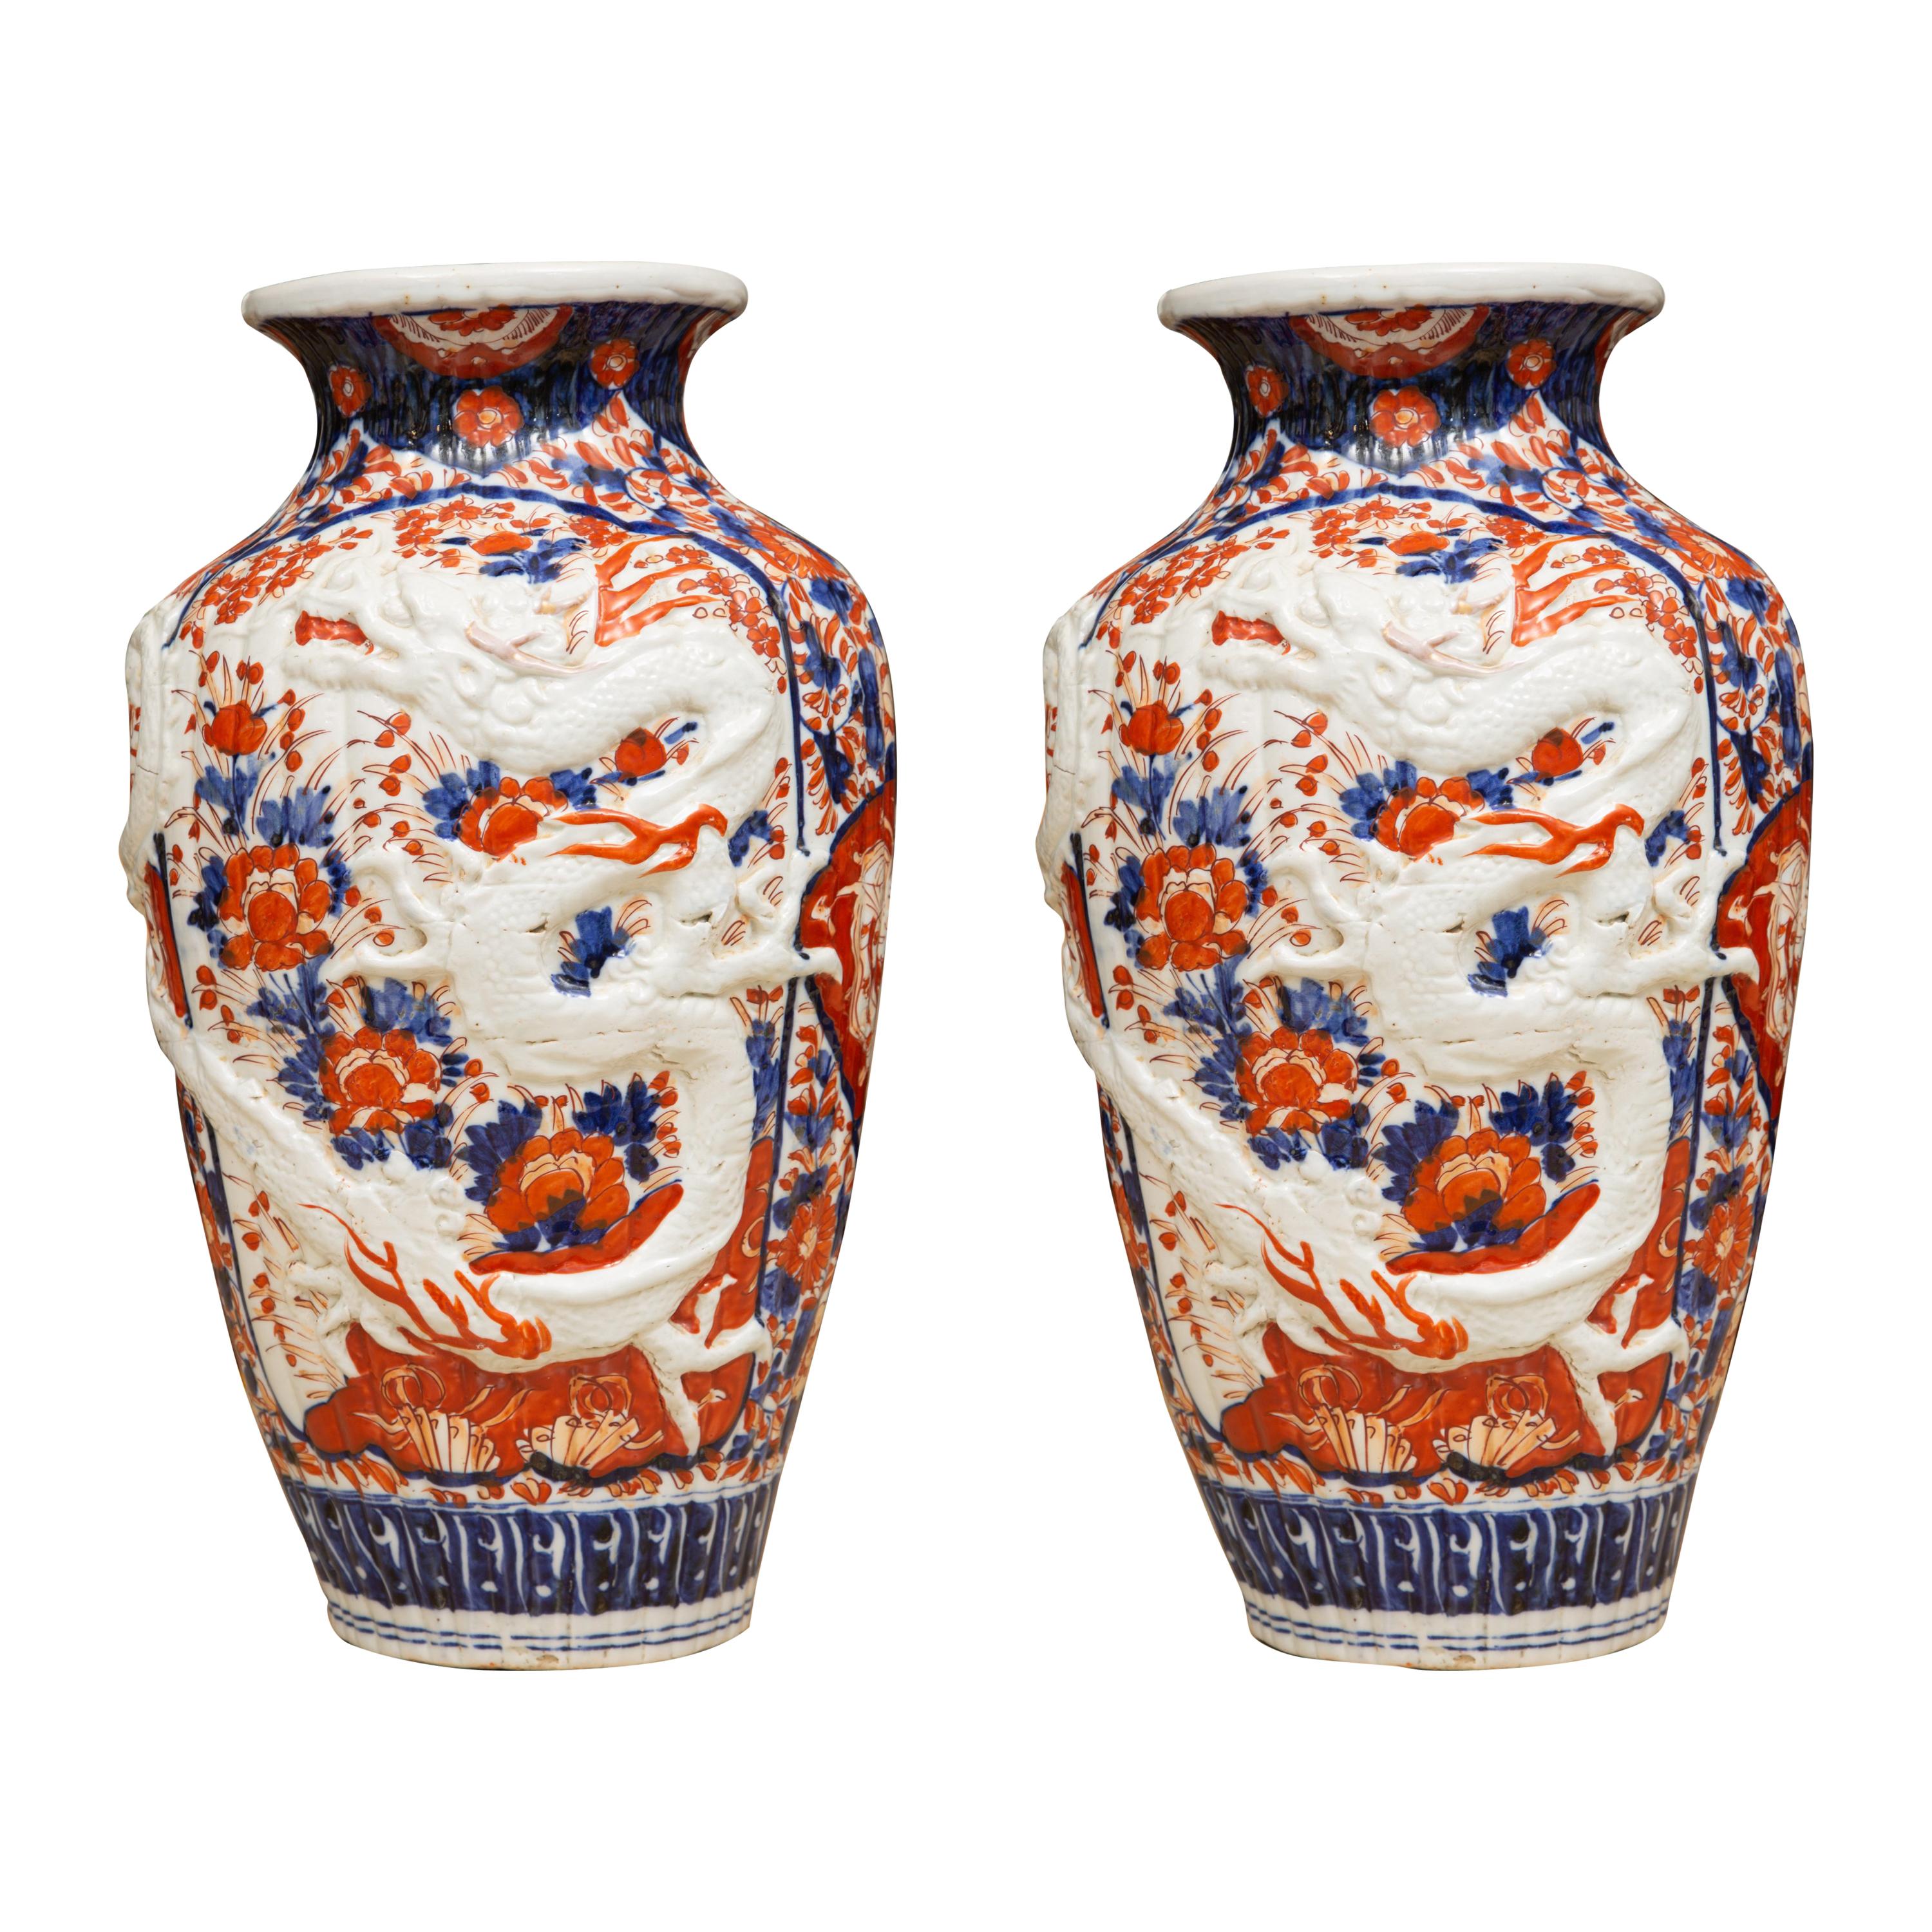 Japanische Imari-Vasen des 19. Jahrhunderts mit erhabener Drache